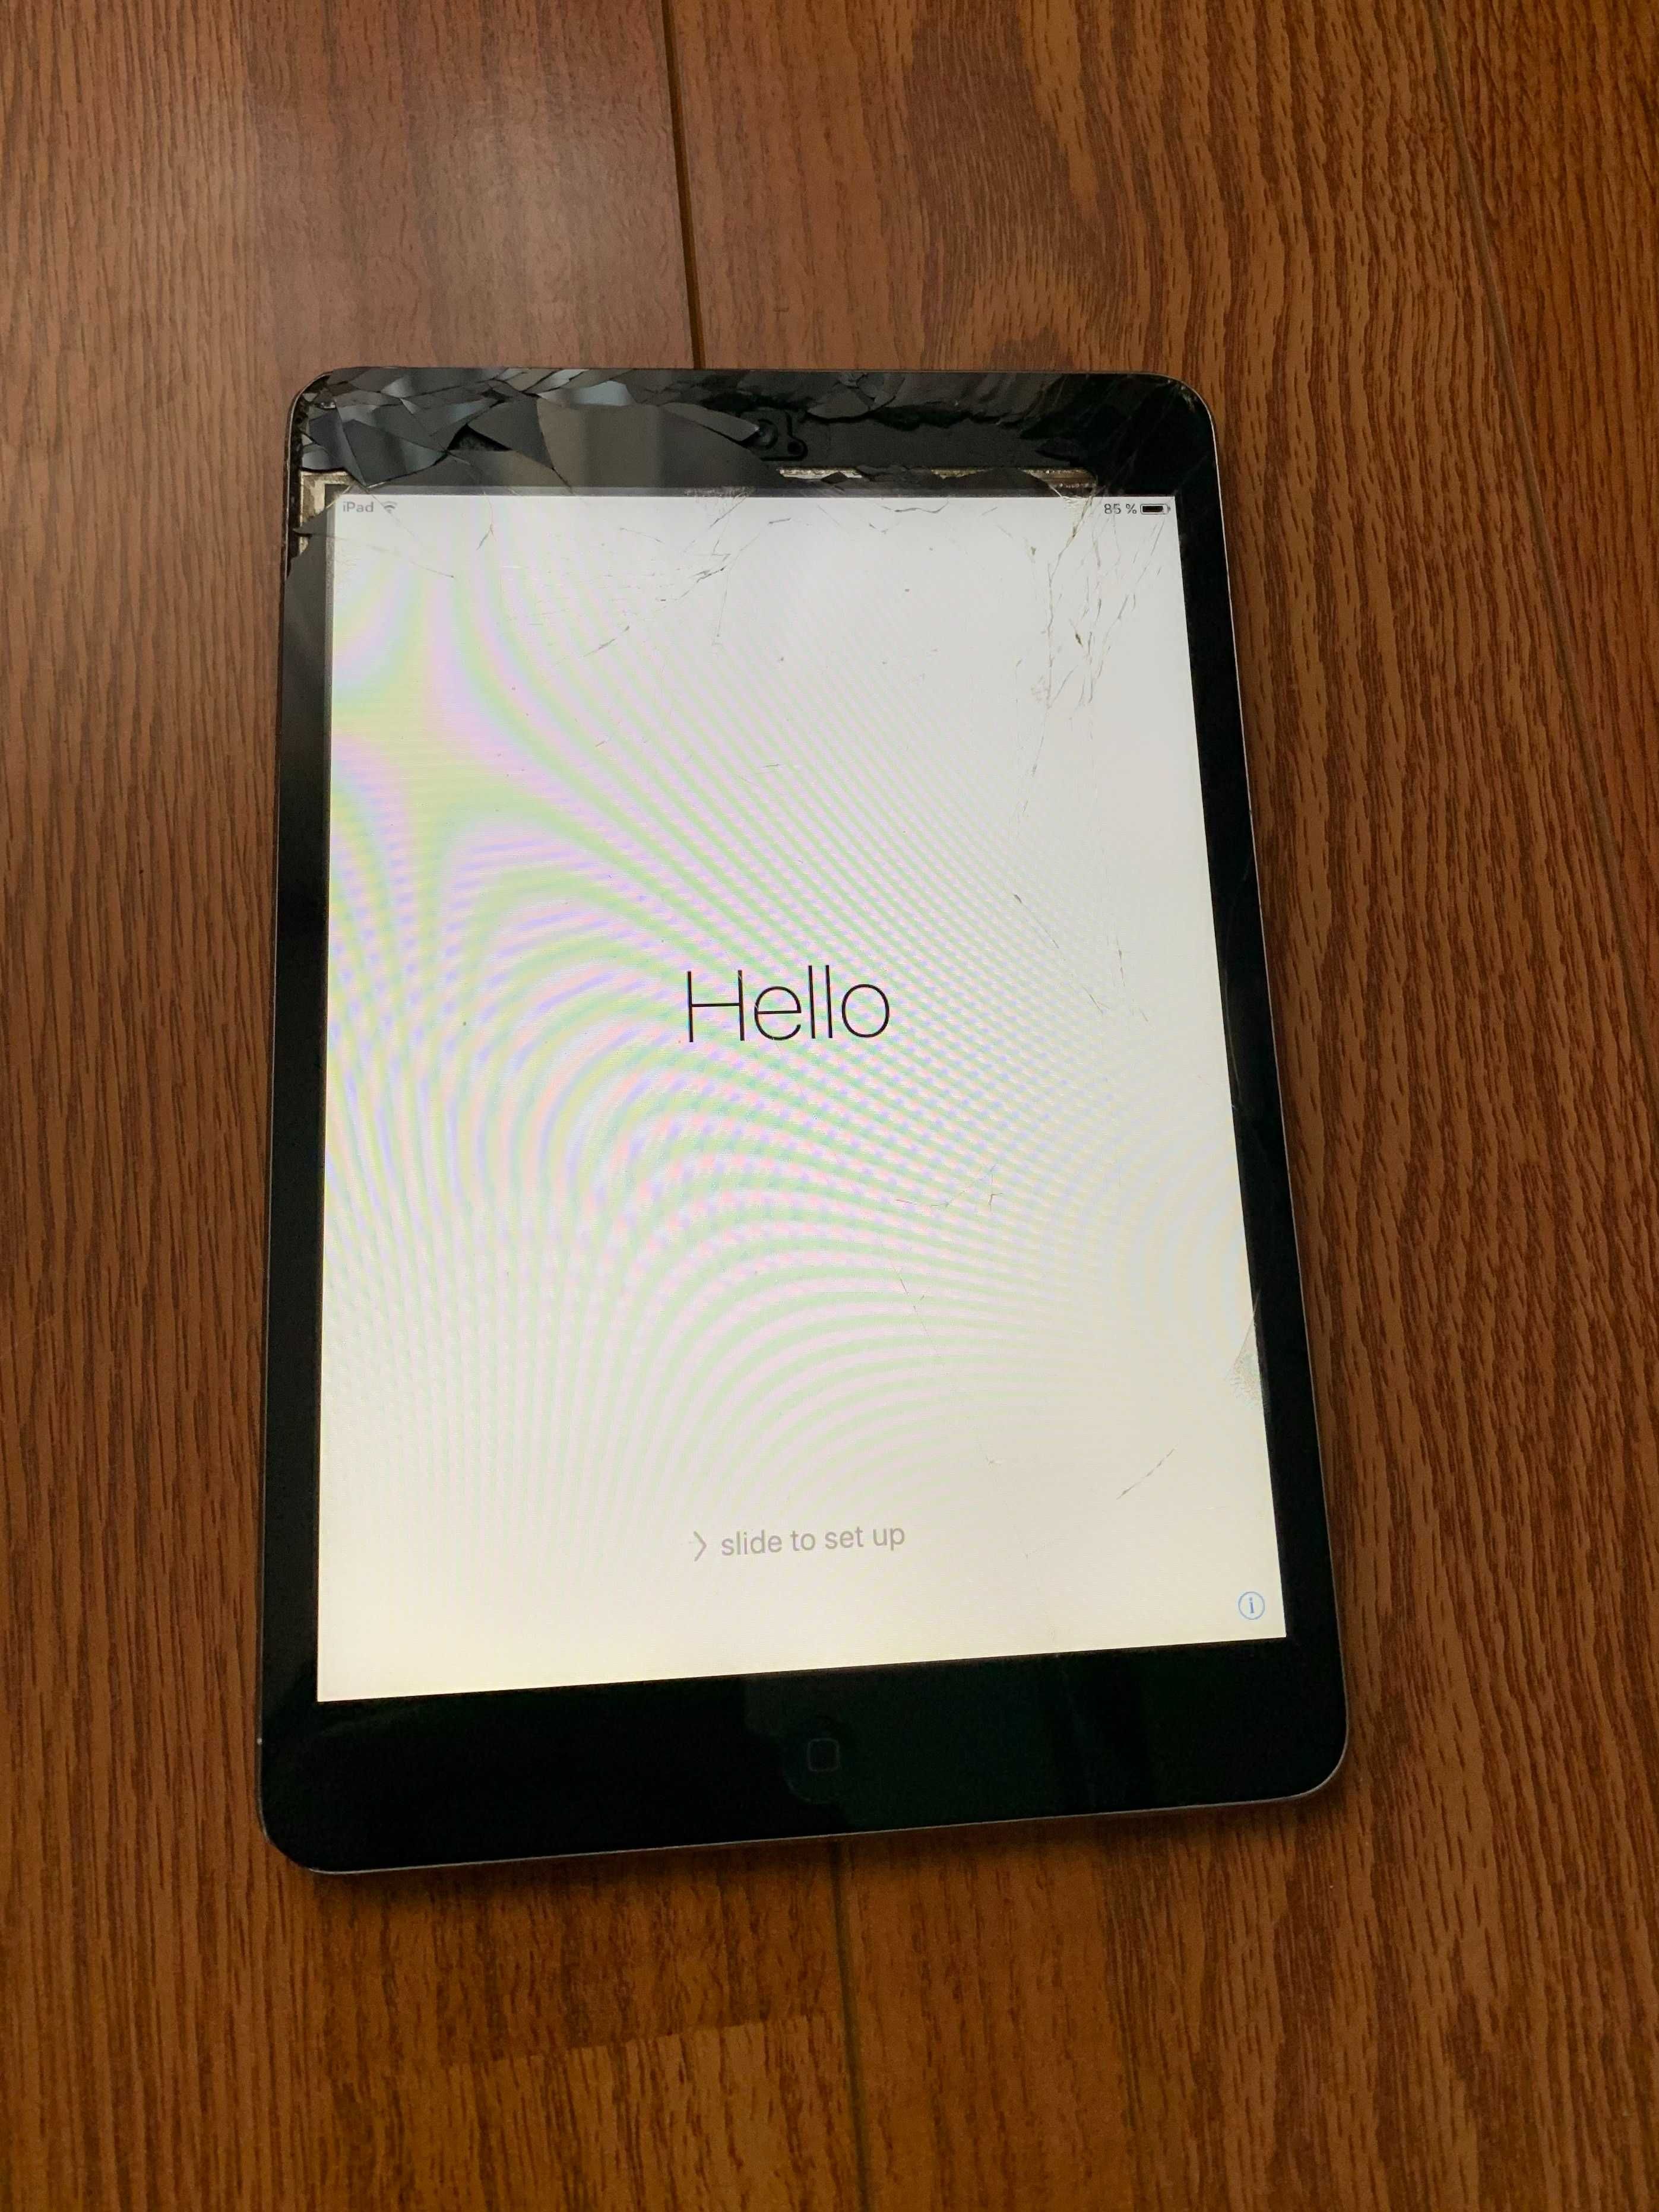 Apple iPad mini 2 A1432 2,5 Space gray piese tabletă defectă